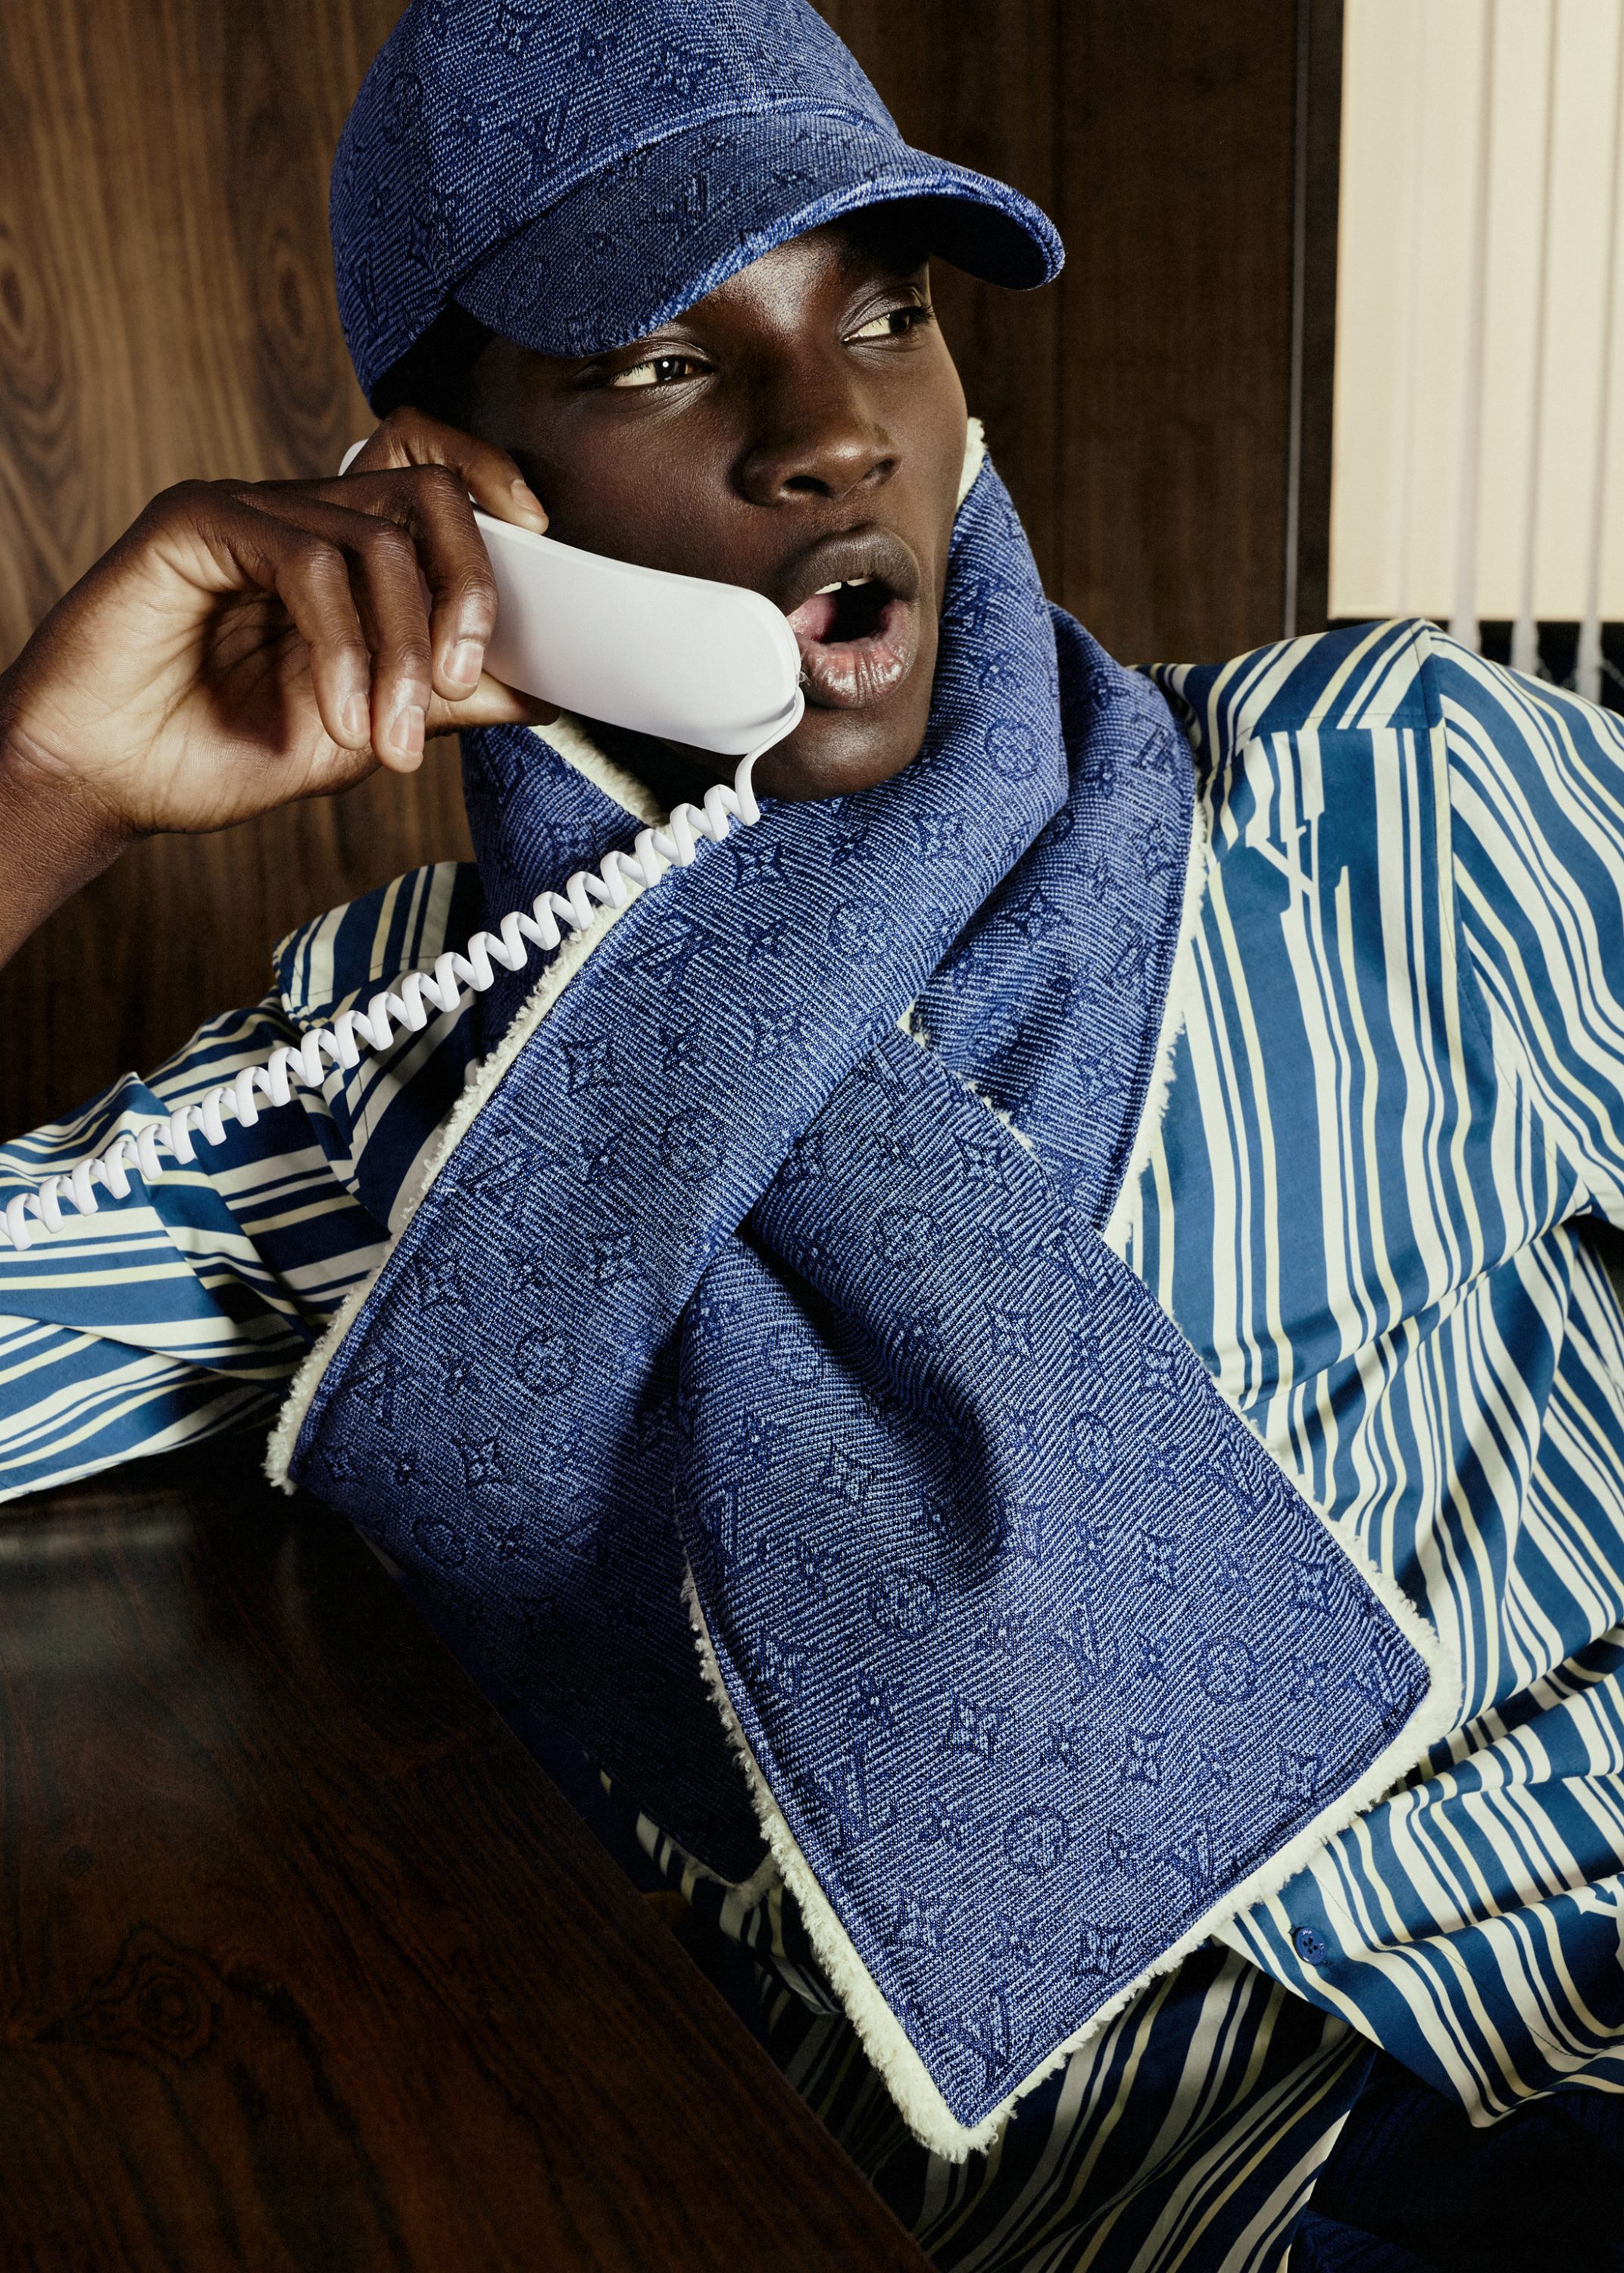 9 Louis Vuitton shawl ideas  lv scarf, louis vuitton scarf, louis vuitton